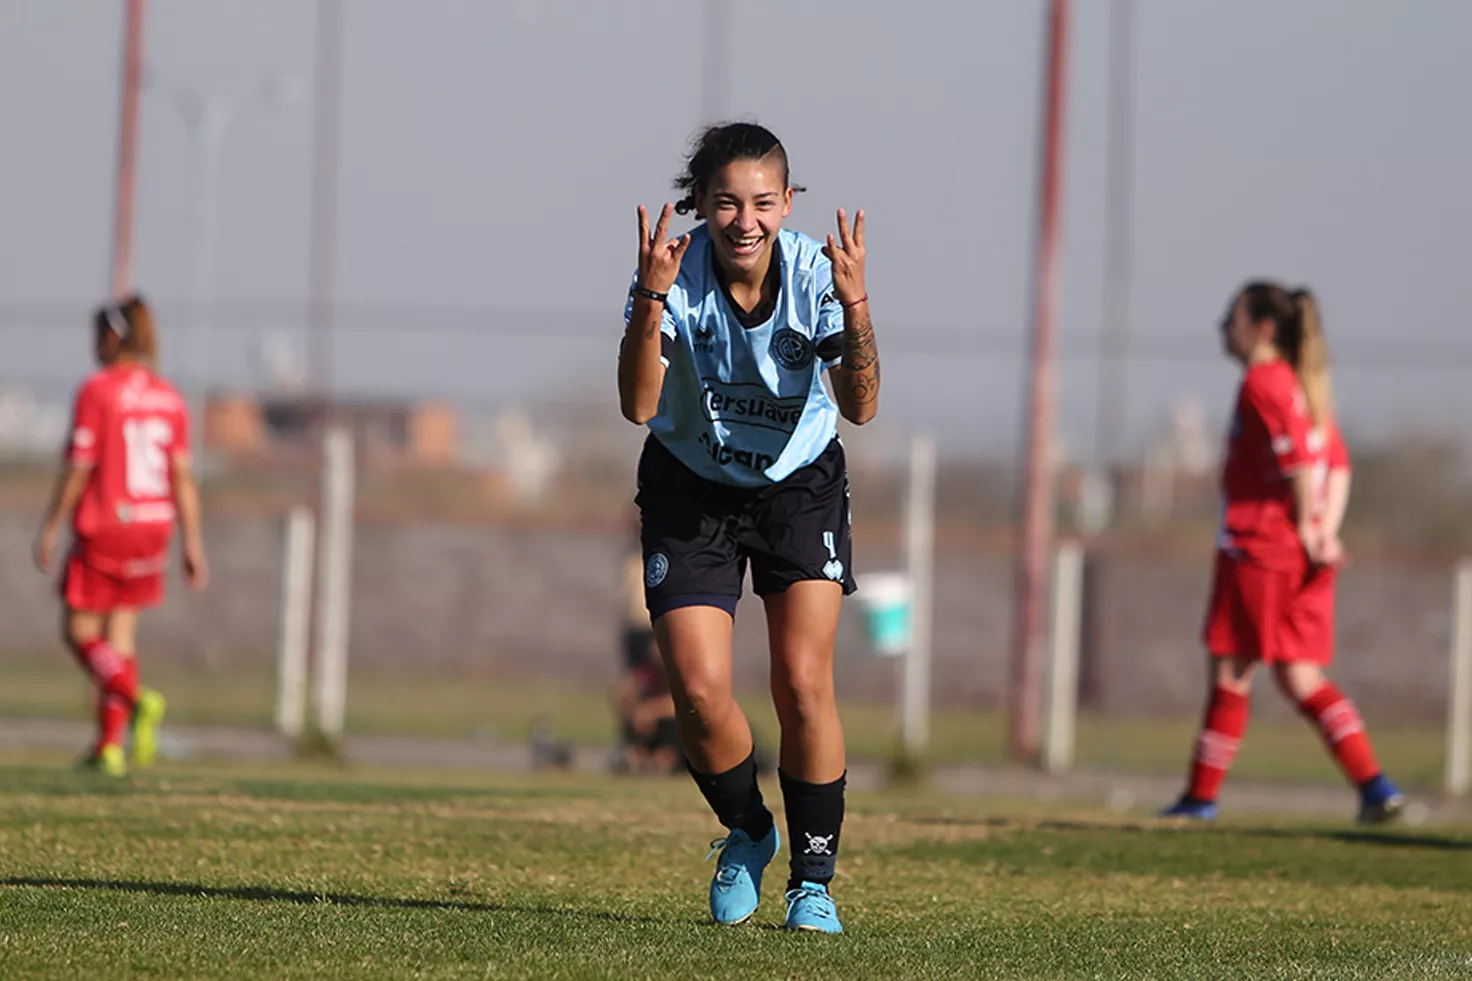 Belgrano femenino ganó y continúa su marcha goleadora en AFA